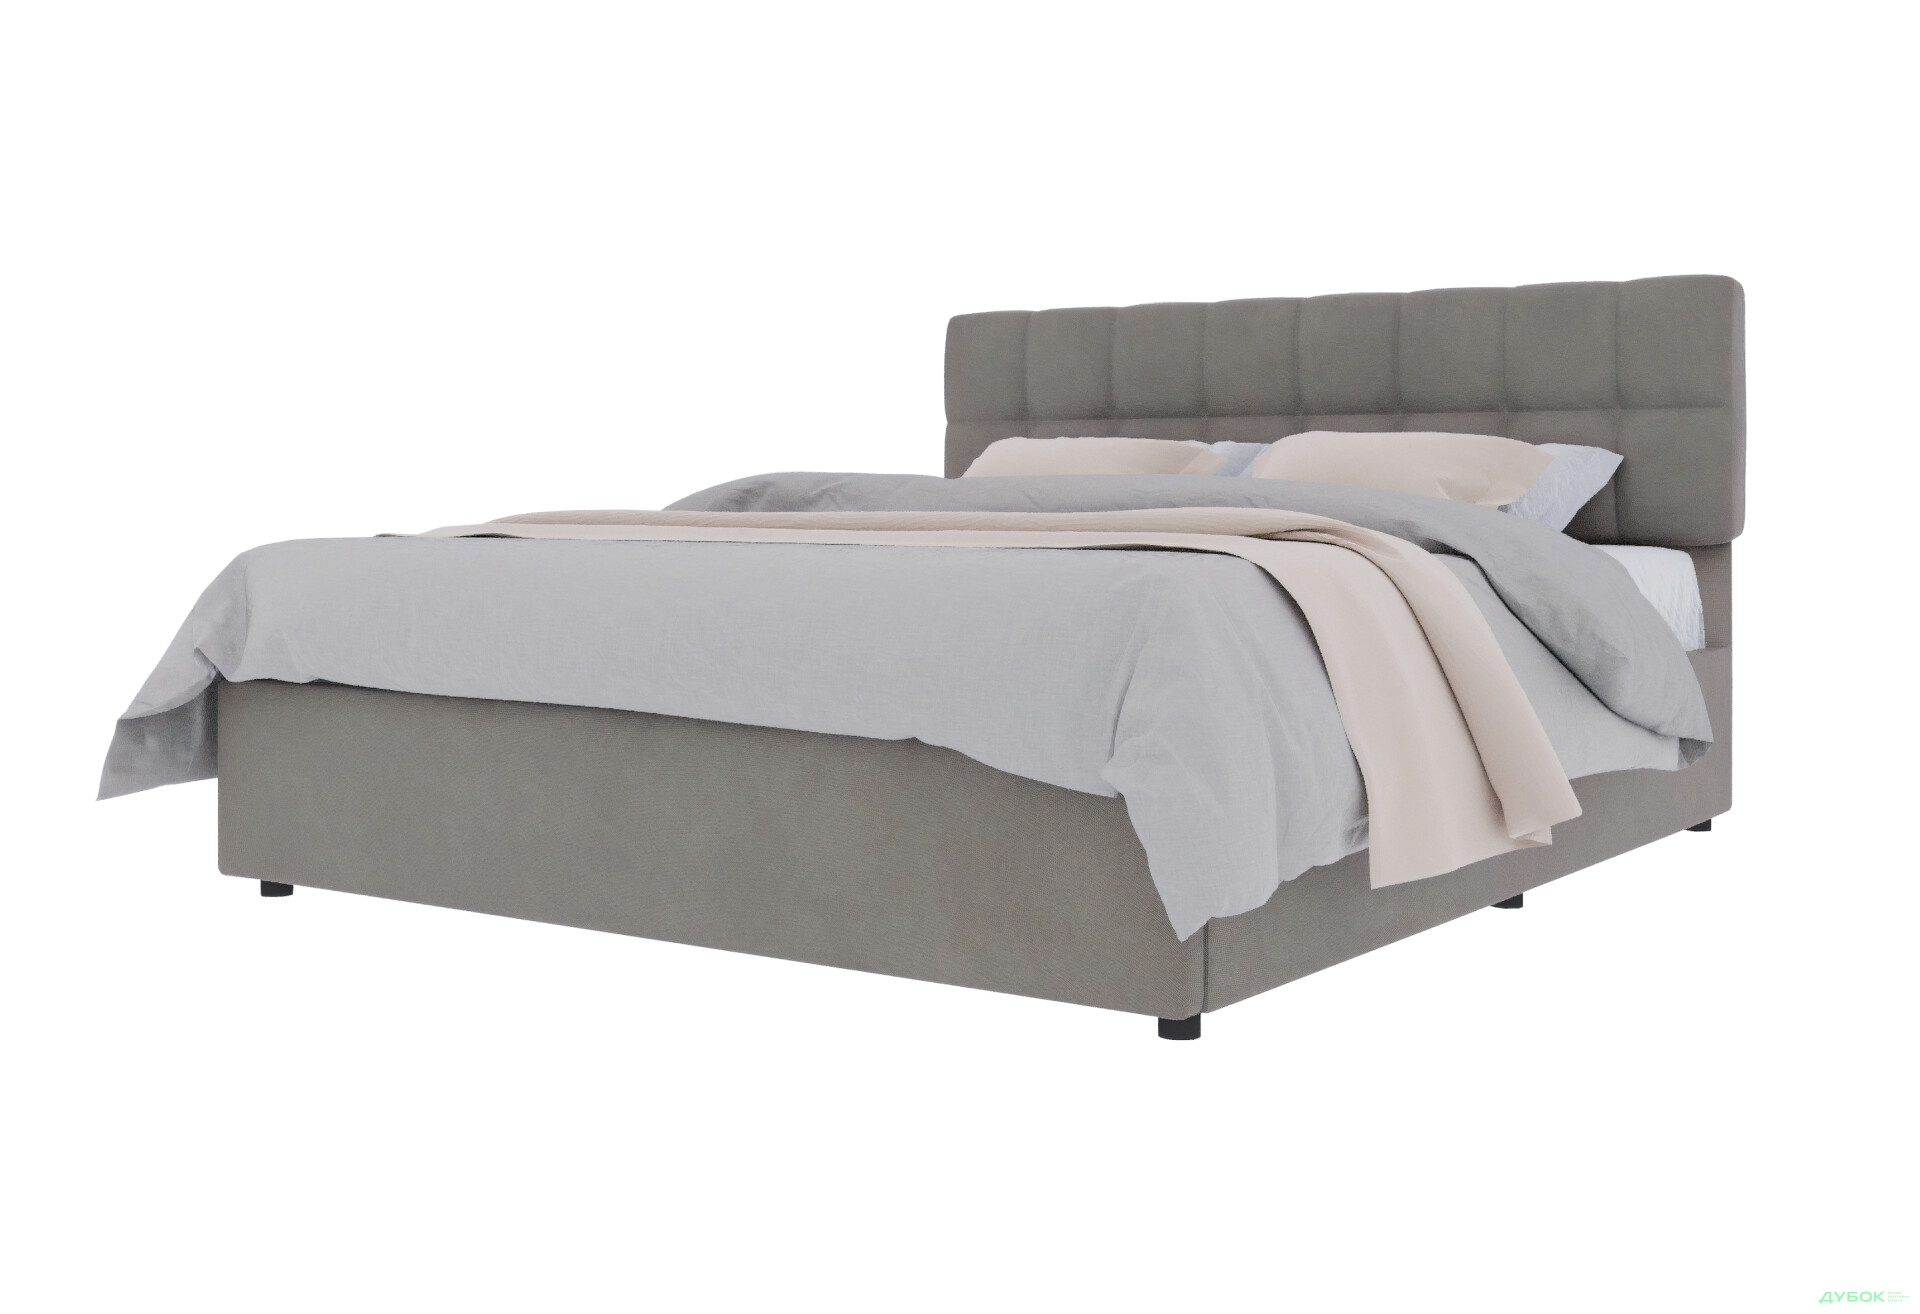 Фото 1 - Ліжко-подіум UMa Трініті 160х200 см підйомне, сіро-коричневе (Fancy 96)